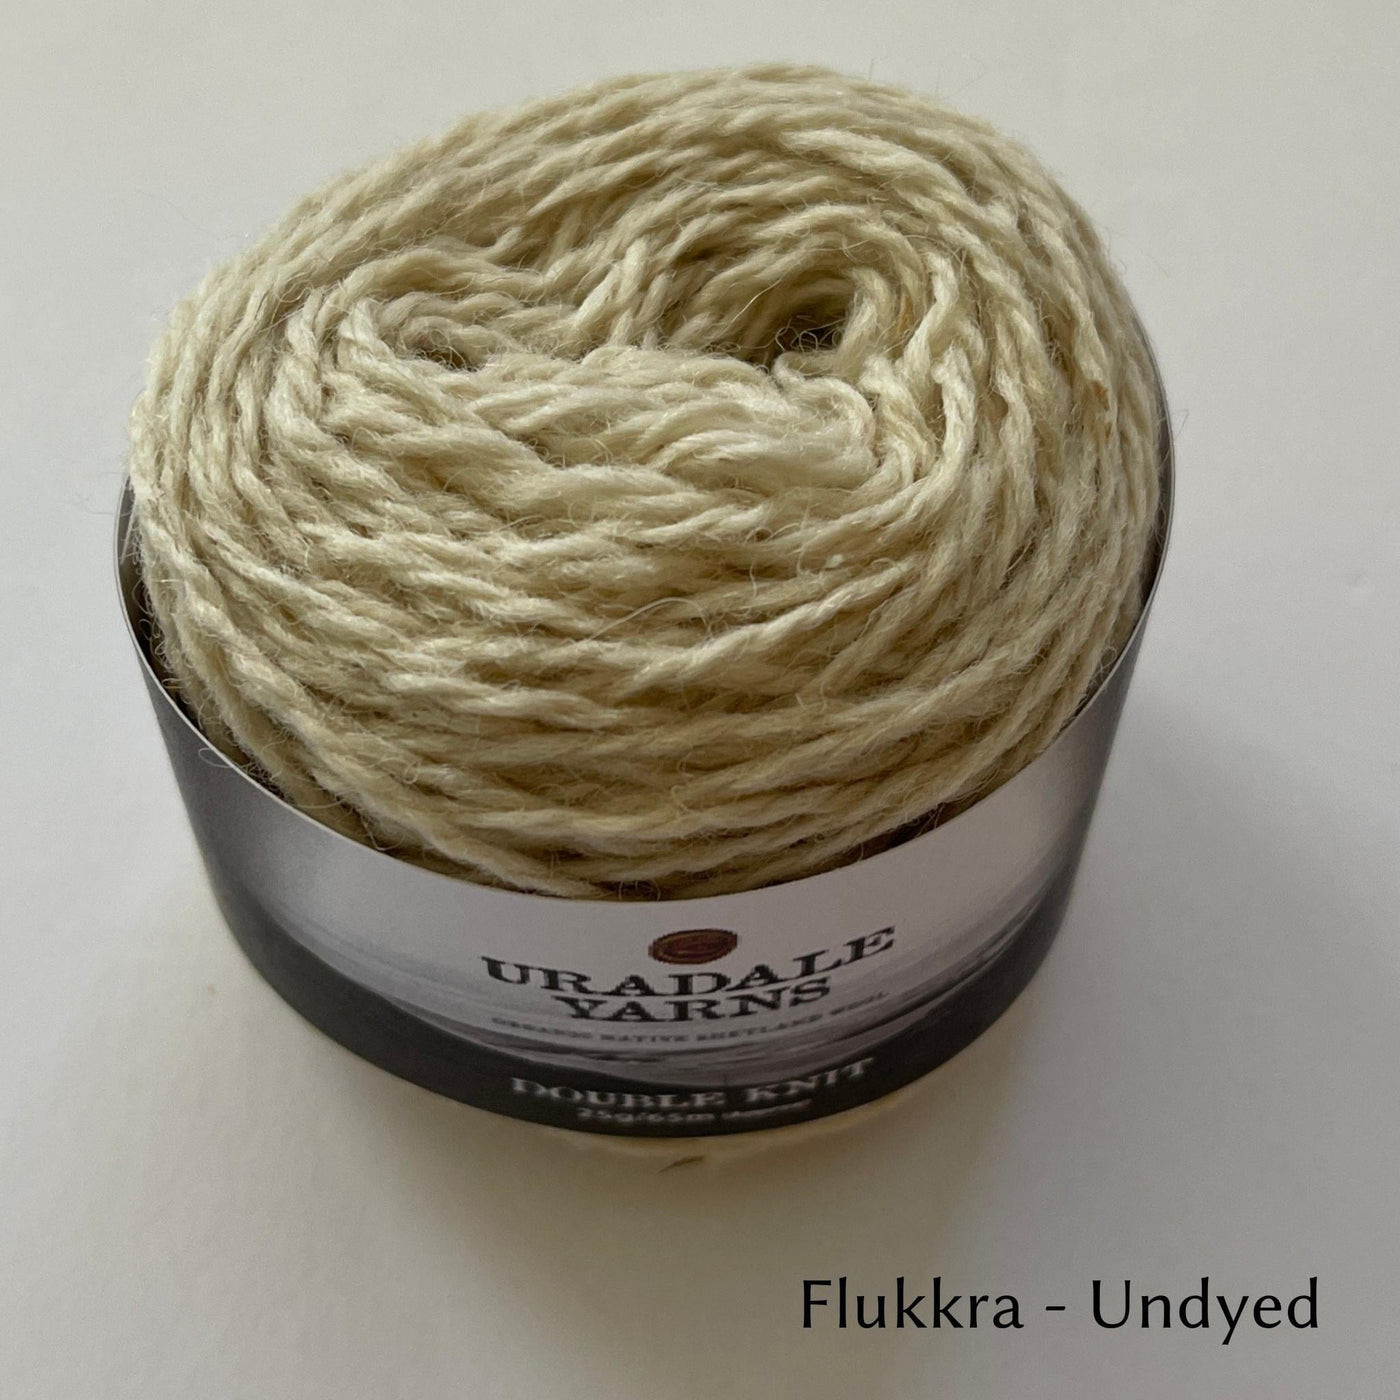 cake of Uradale DK yarn in color Flukkra - Undyed cream